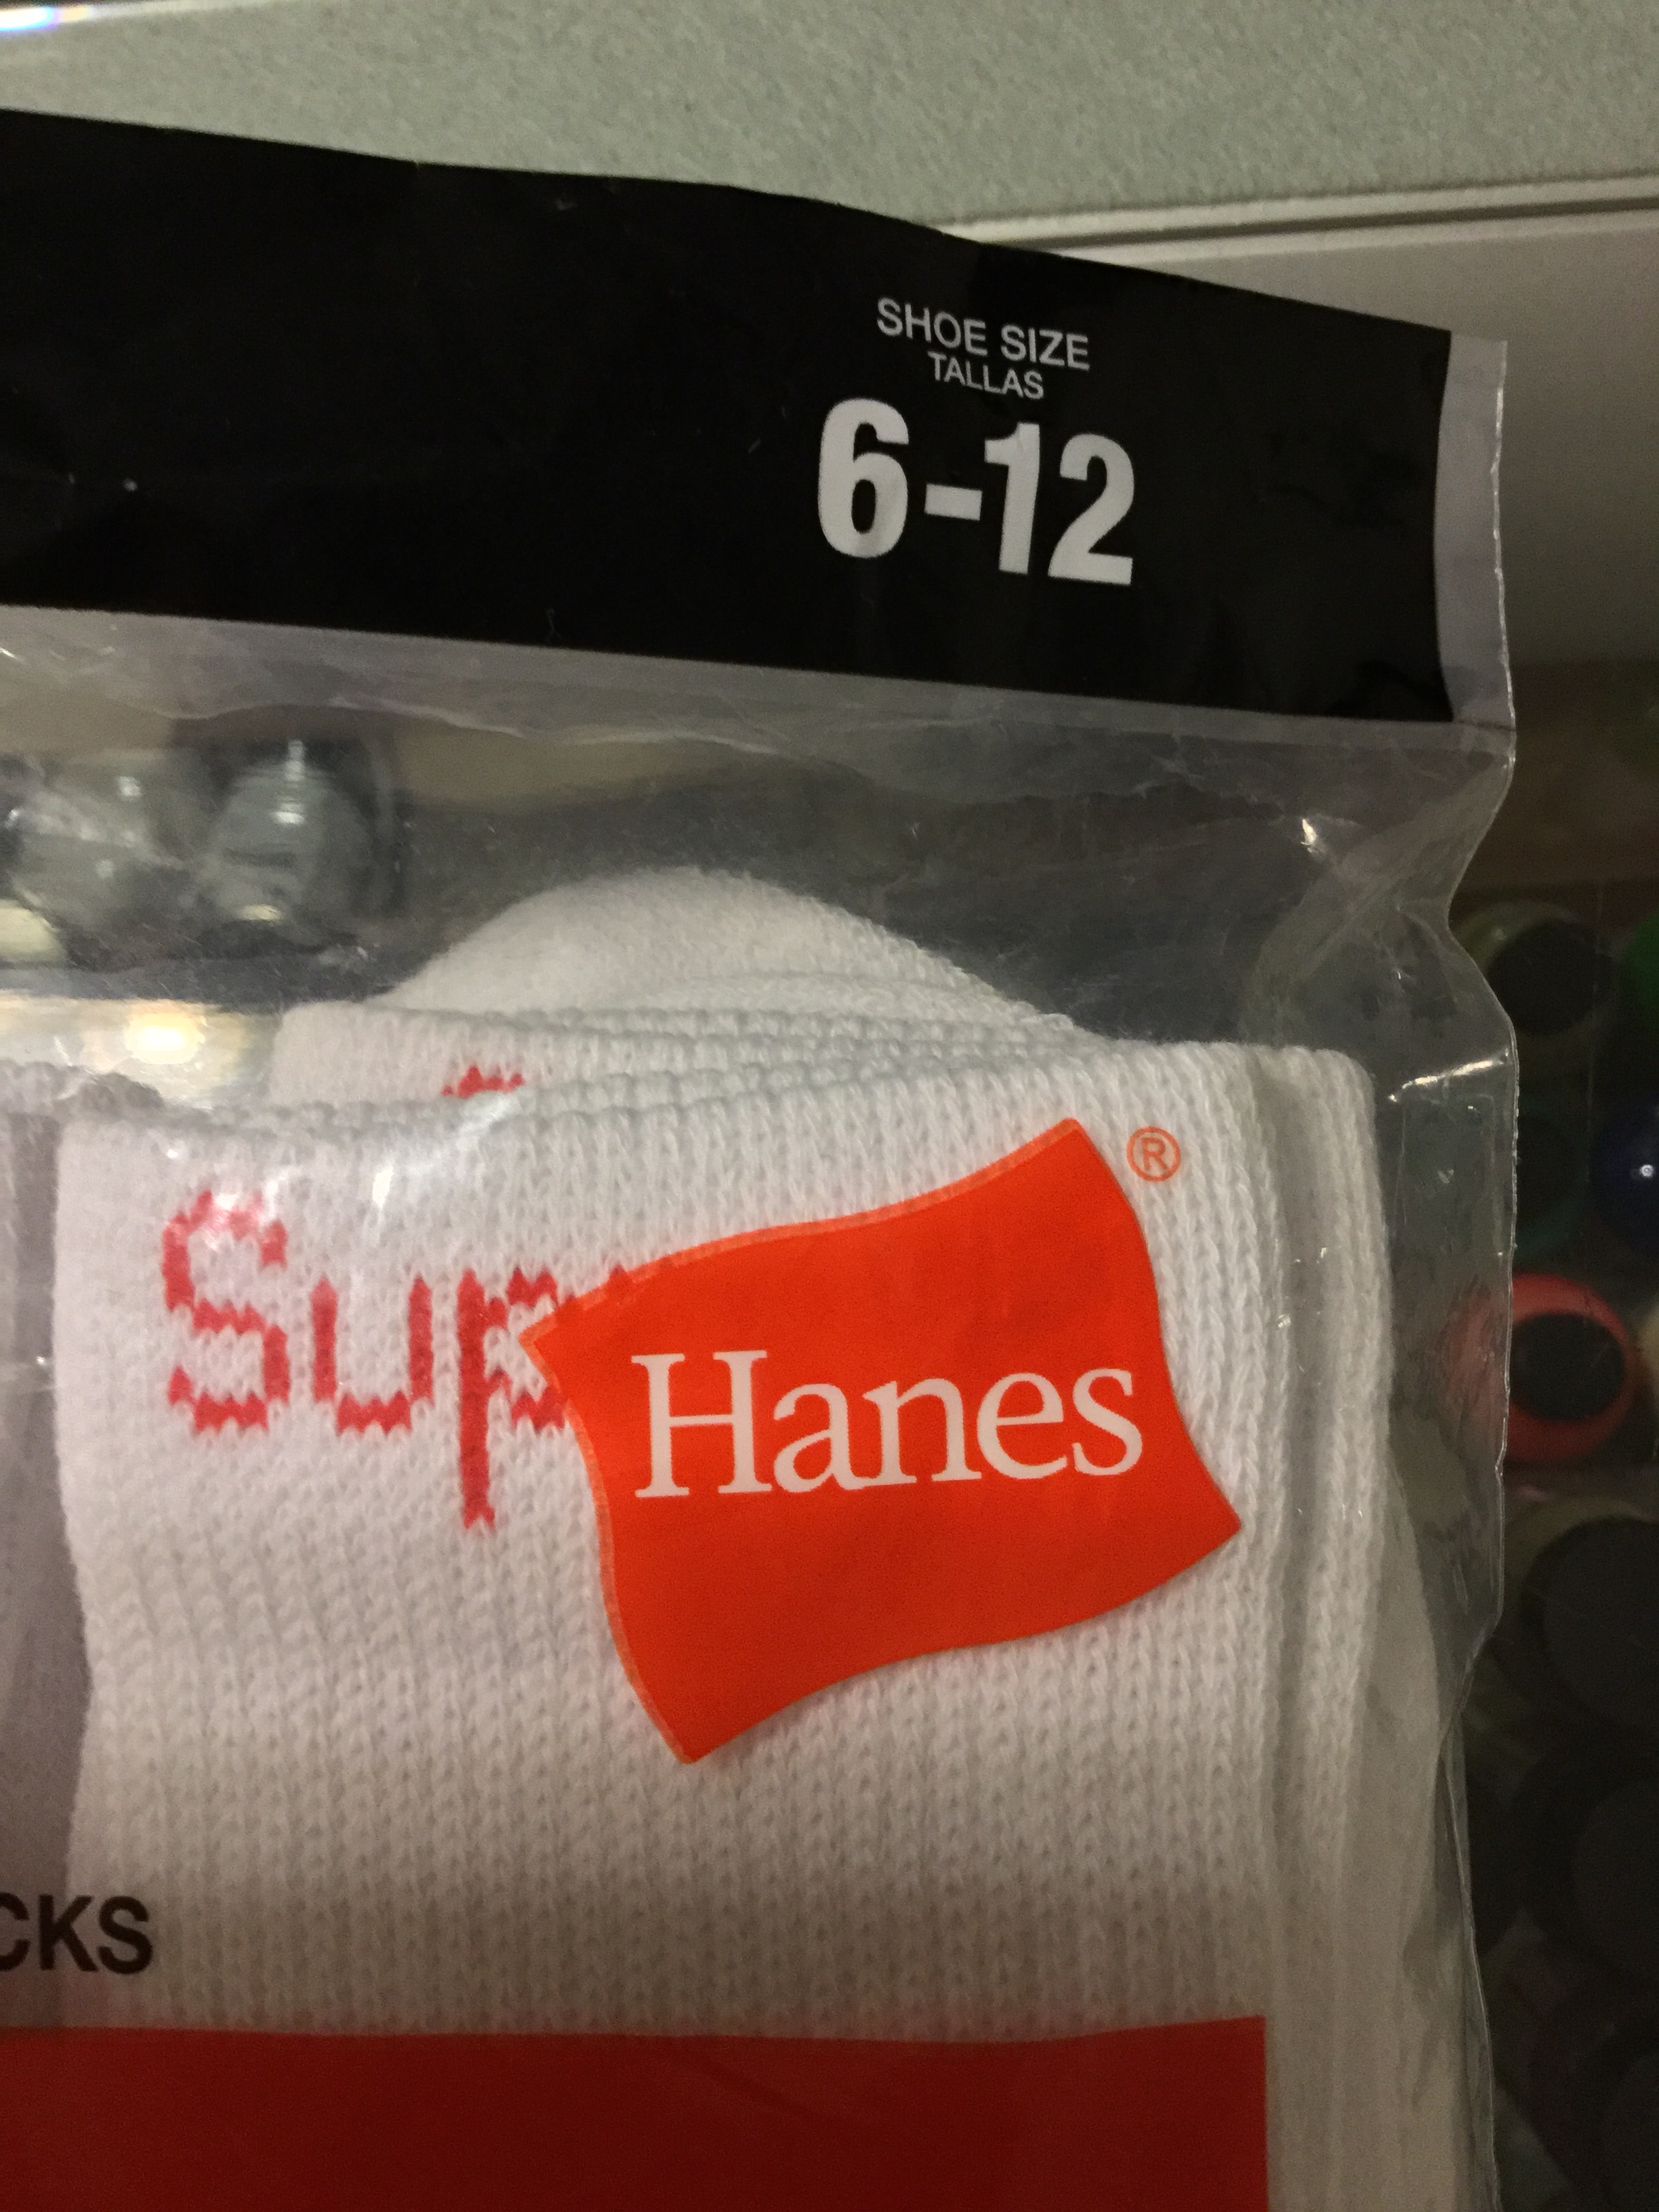 Supreme Hanes Size Guide